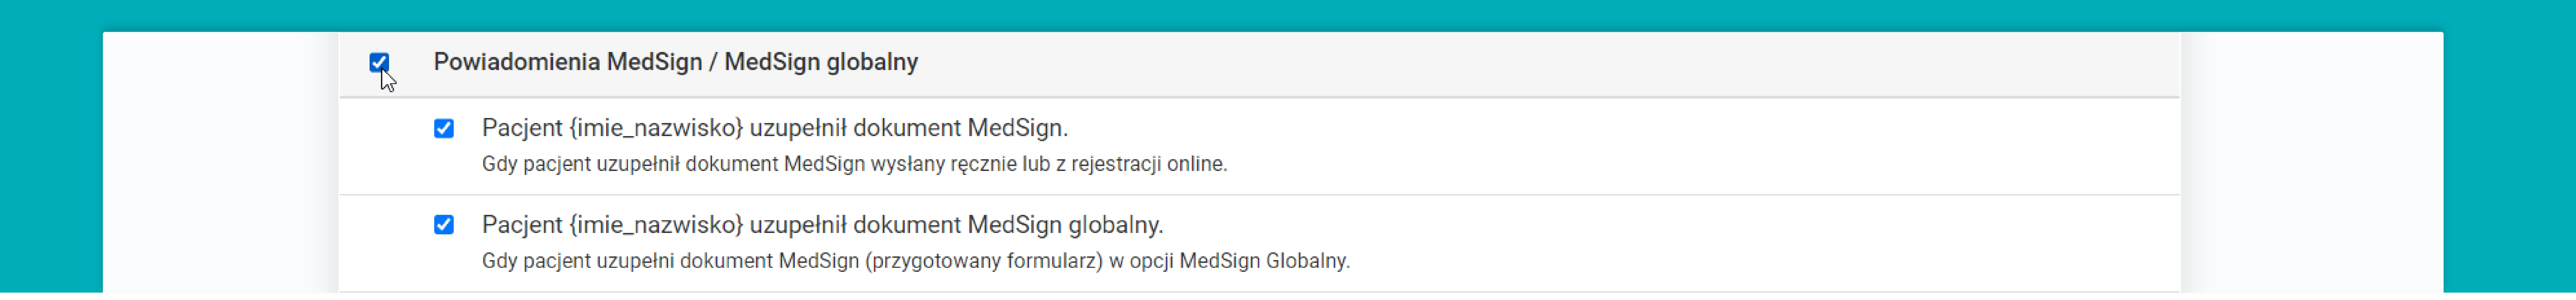 Powiadomienia MedSign / MedSign globalny